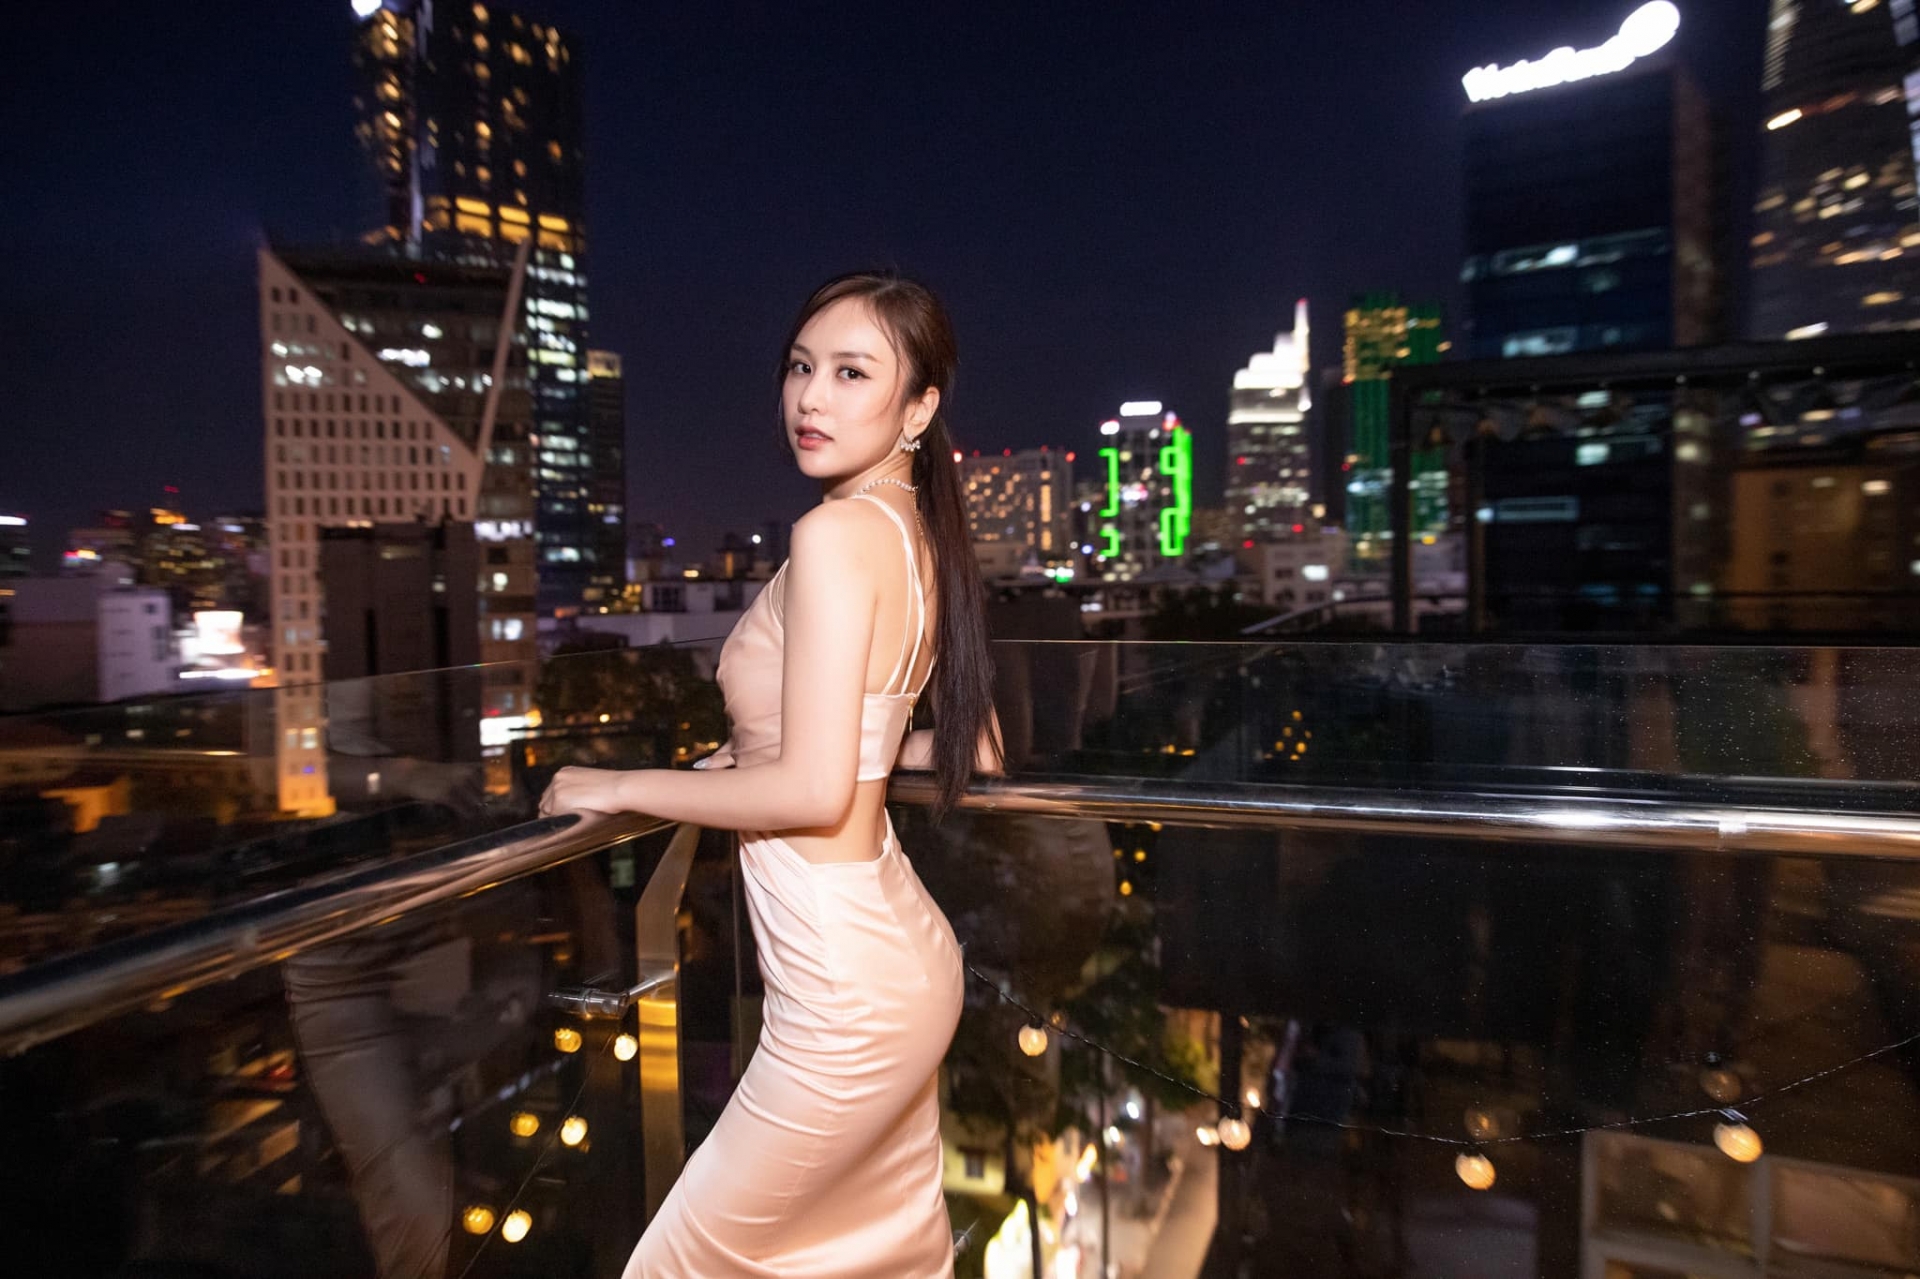 Con gái NSND Trần Nhượng diện áo tắm dây khoe dáng trước đêm chung kết hoa hậu - Ảnh 6